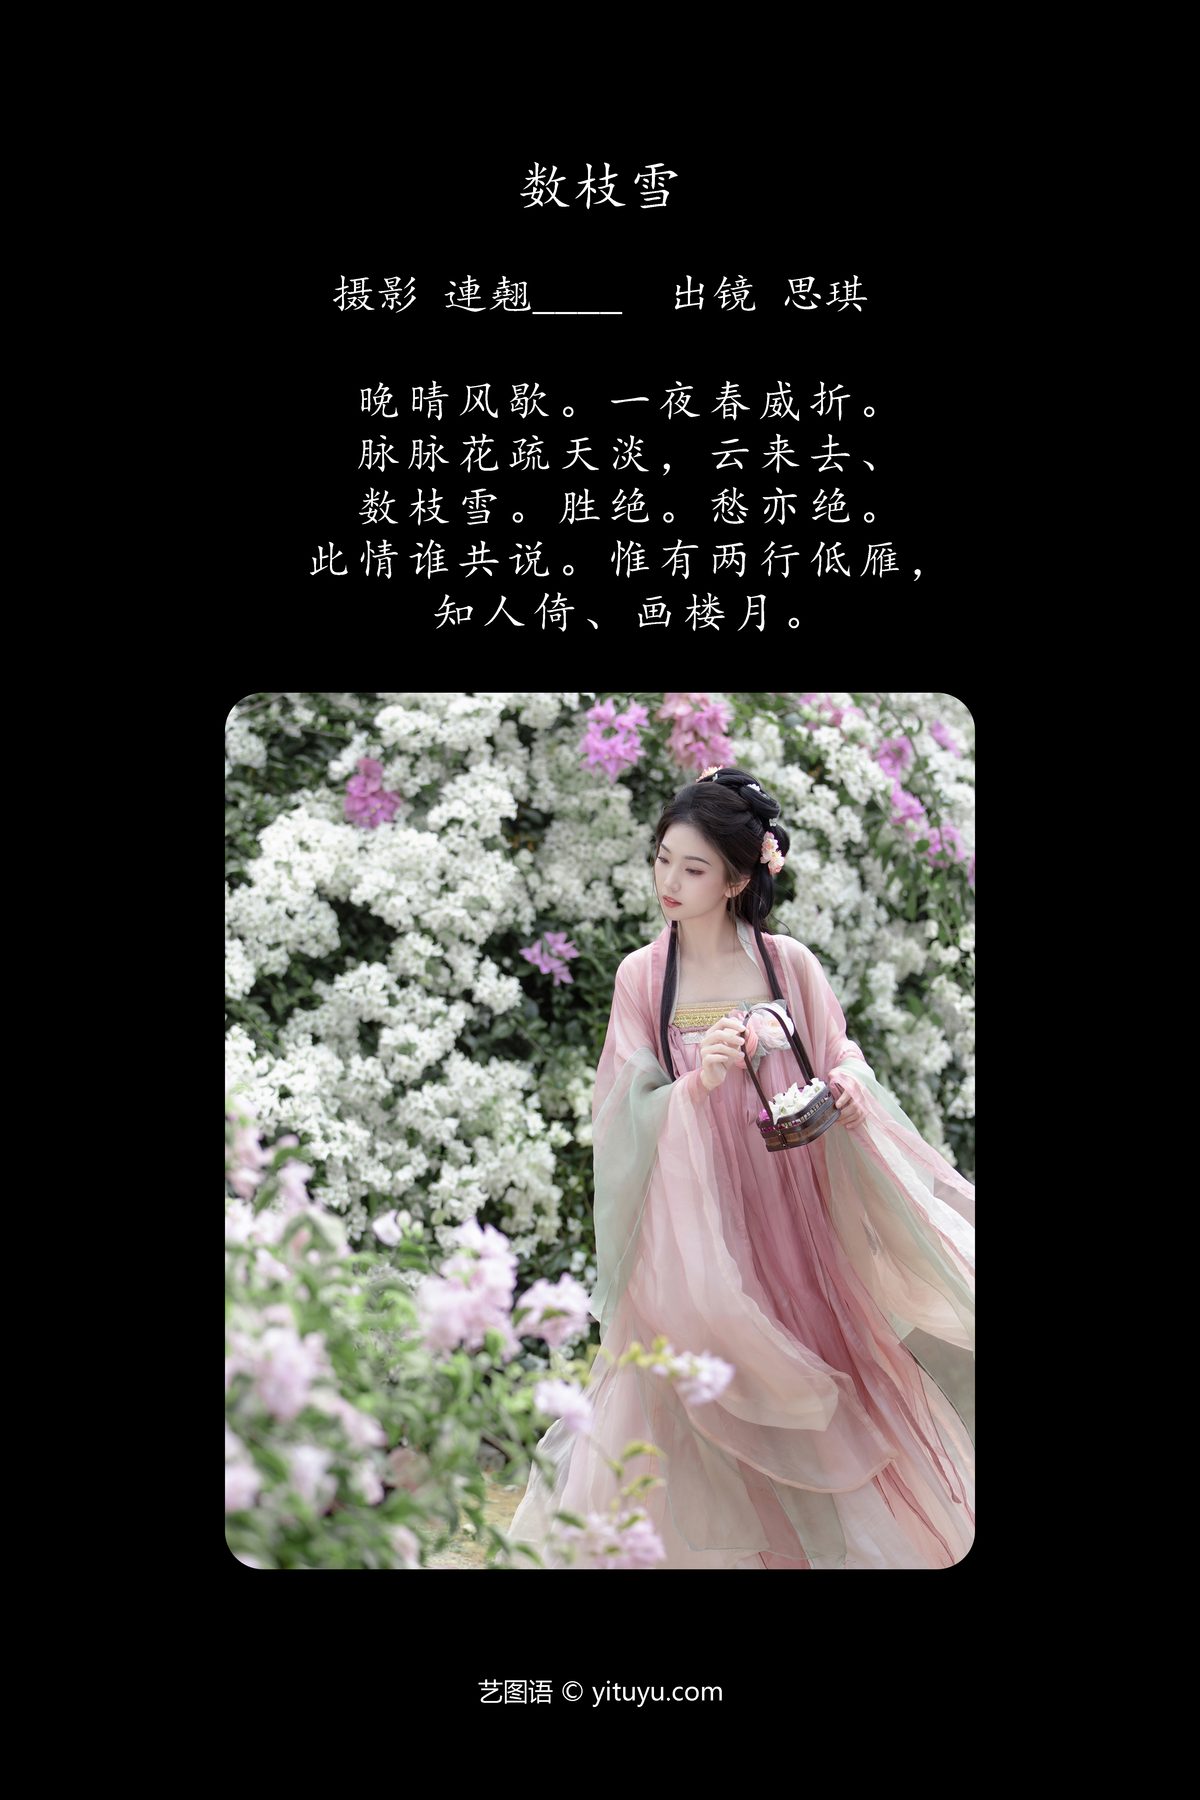 YiTuYu艺图语 Vol 6164 Zhi Zhi Qi 0002 9390044975.jpg